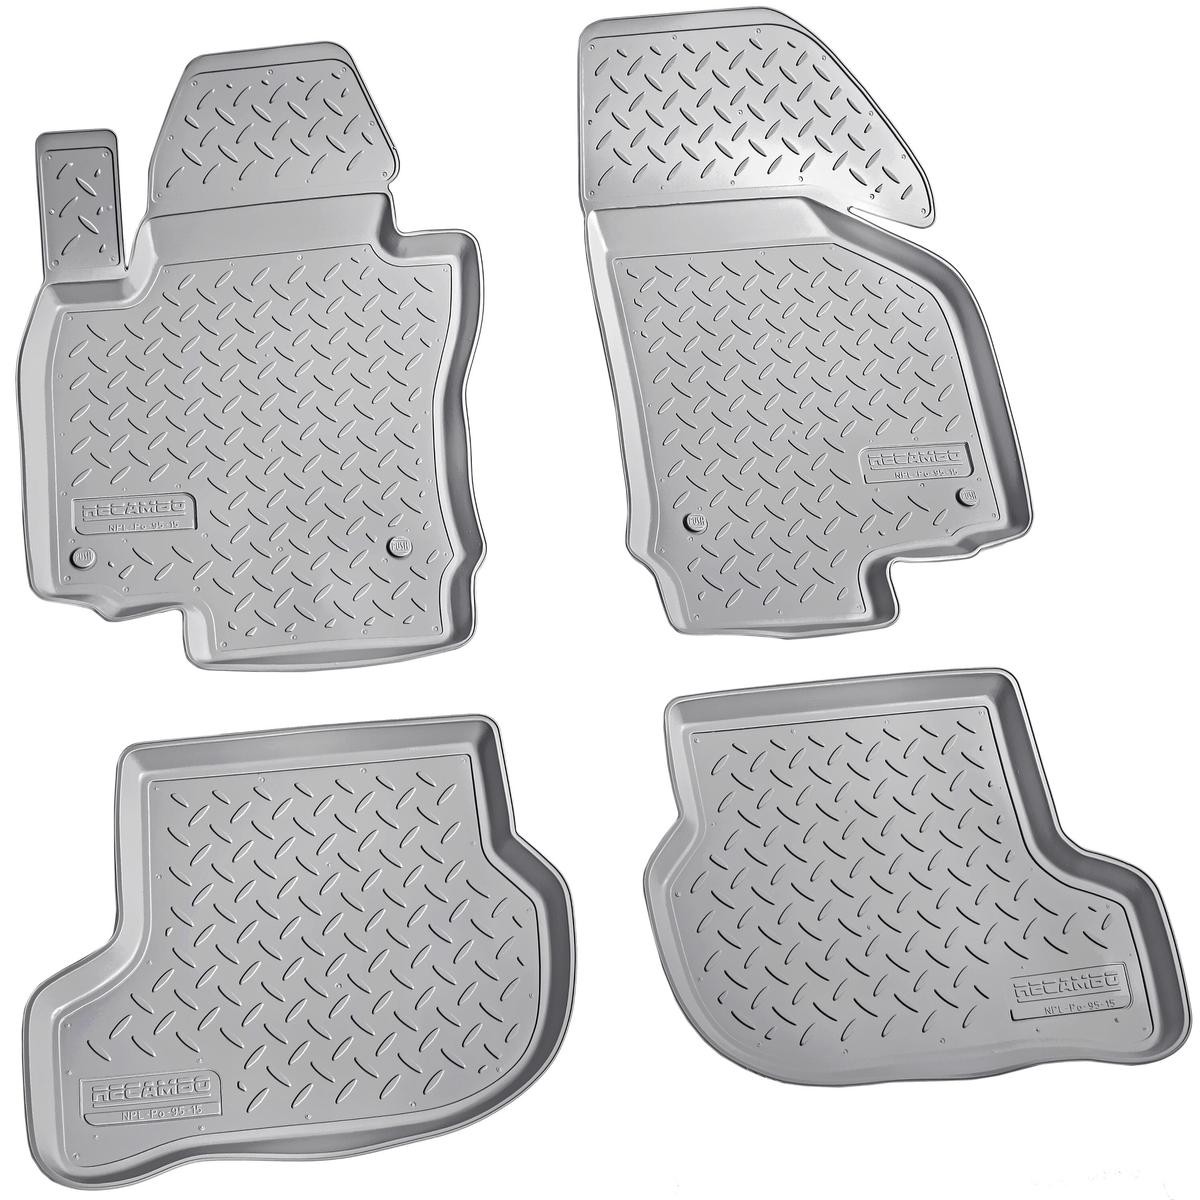 Gummi Fußmatten passend für Seat Exeo / Exeo ST Auto Gummimatten